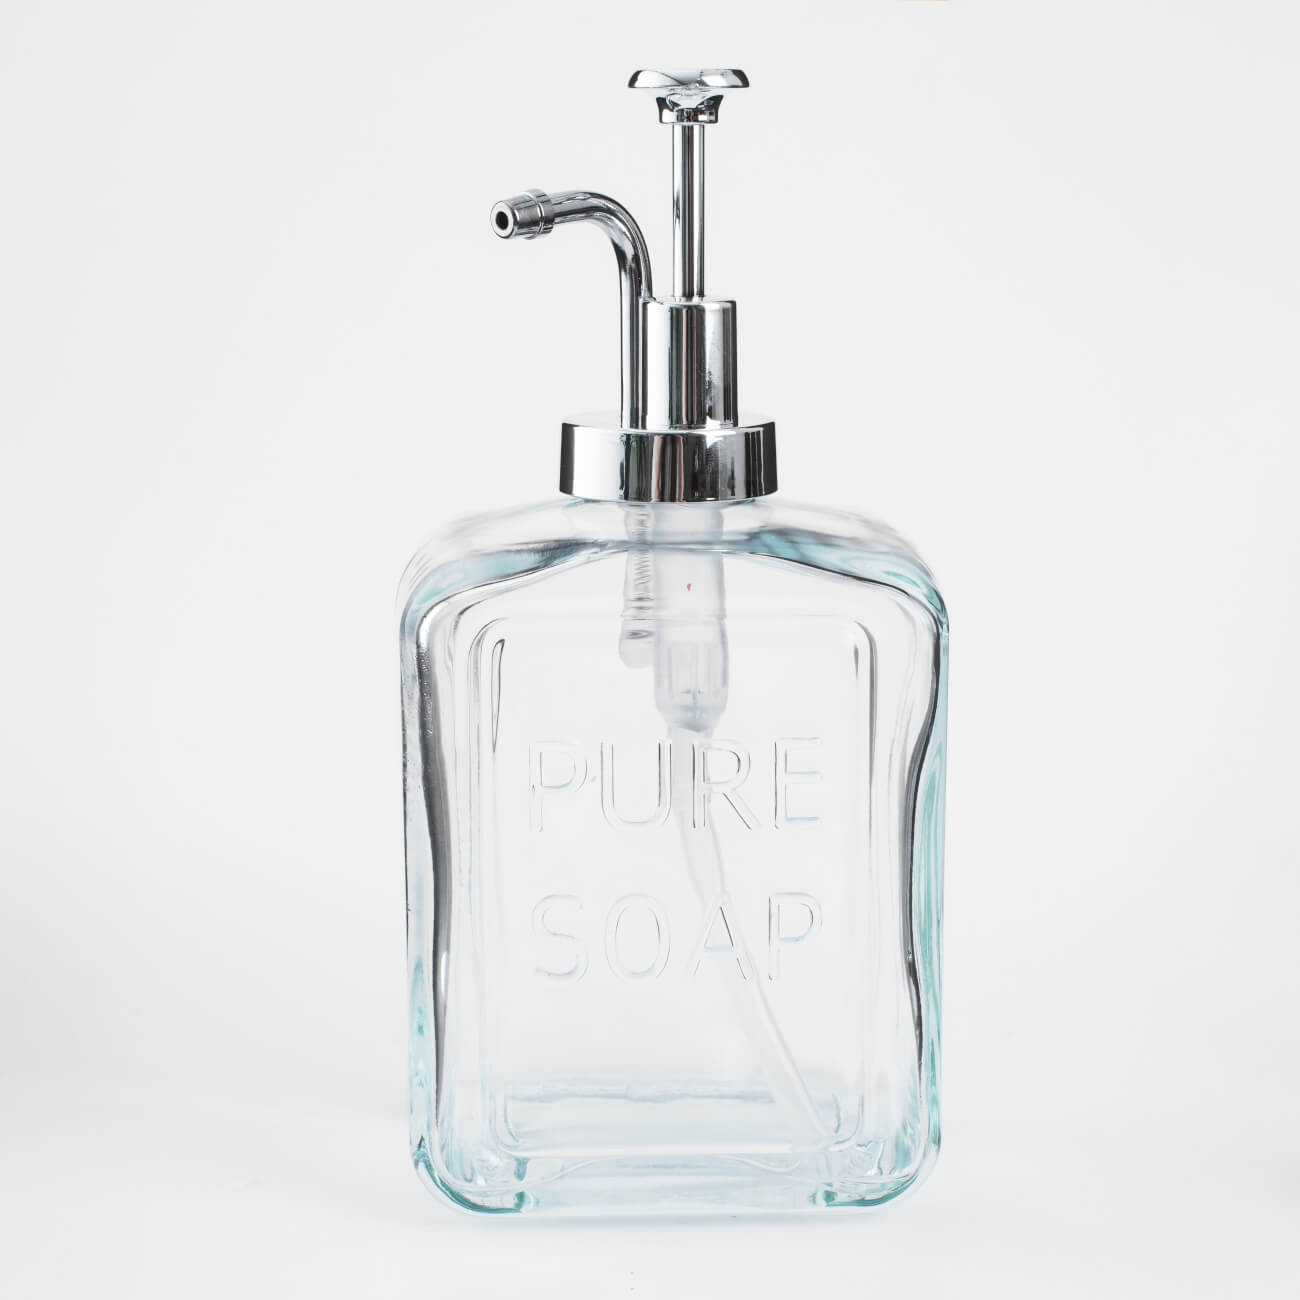 Диспенсер для жидкого мыла, 550 мл, стекло/пластик, серебристый, Pure soap, Clear title изображение № 1